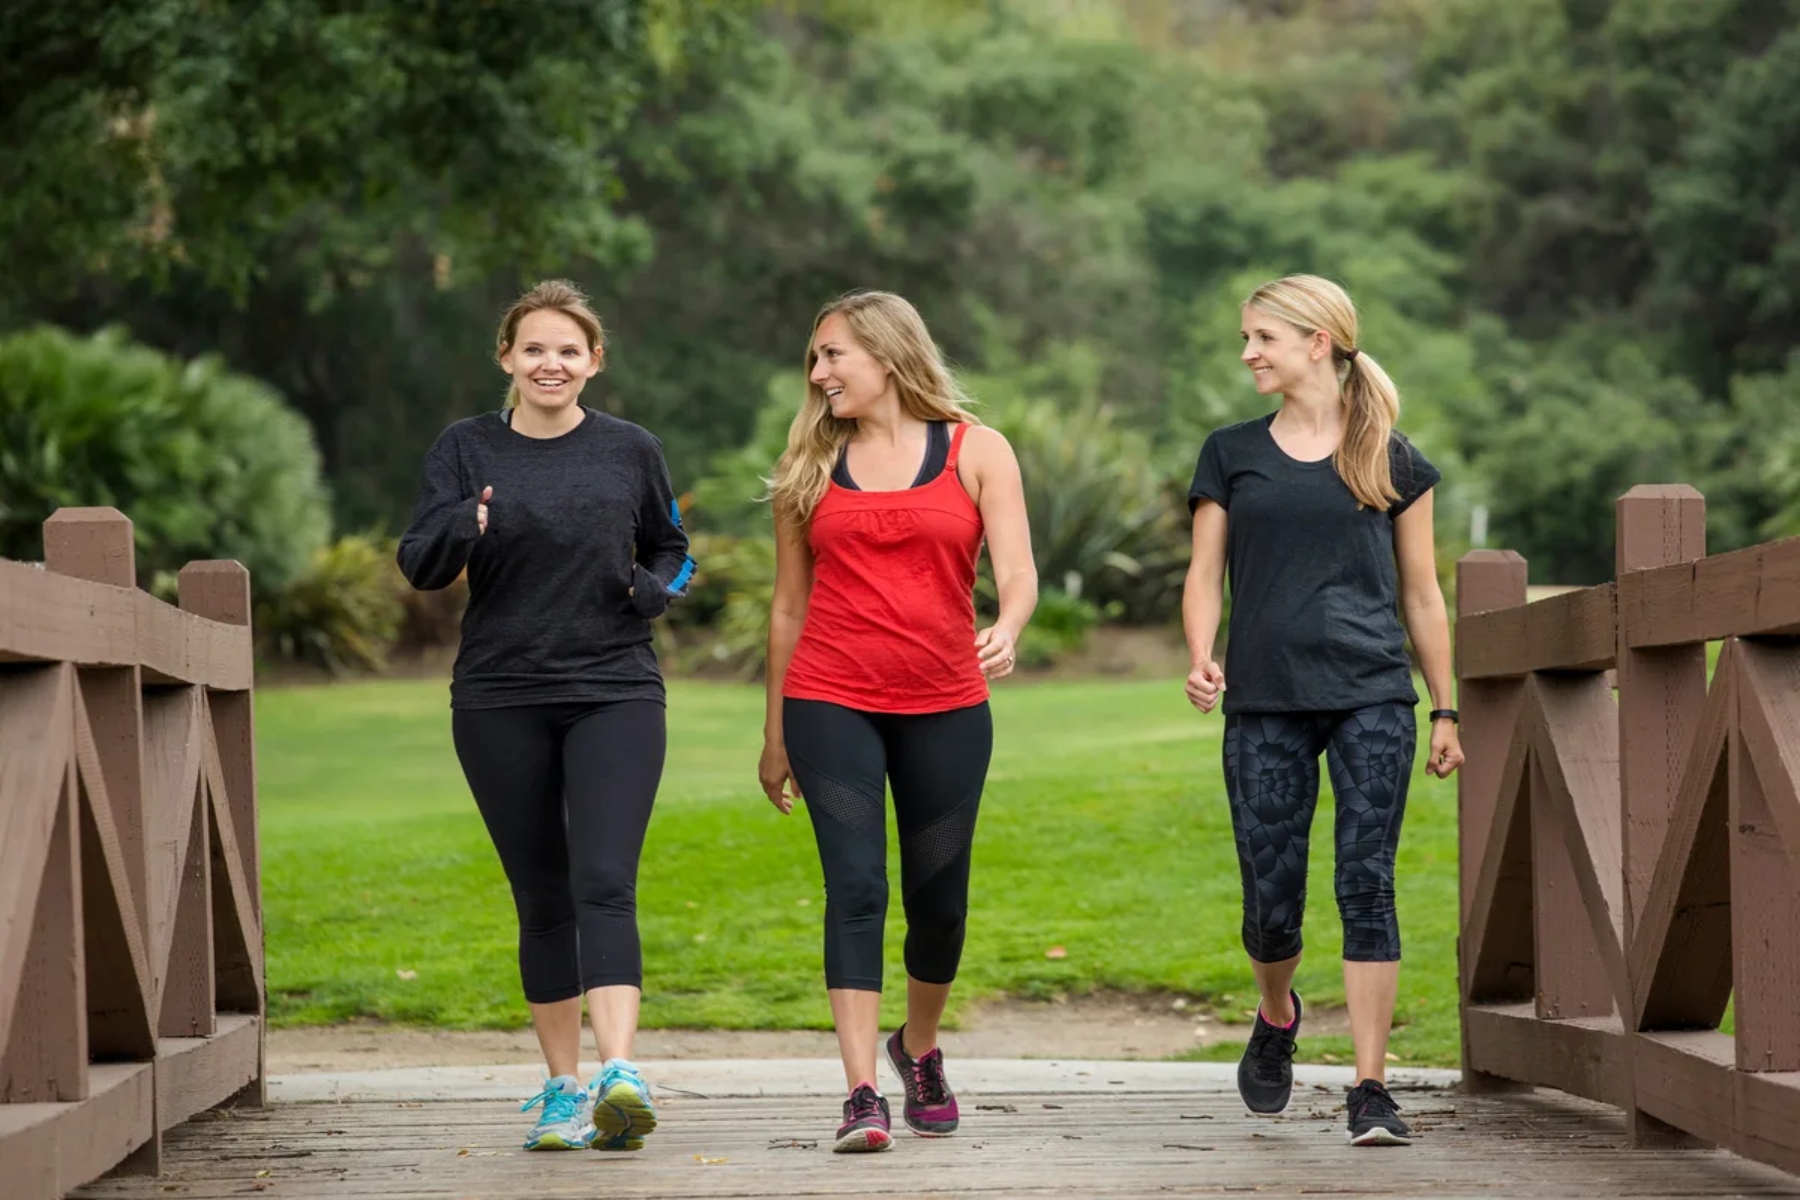 Healthy living: Η άσκηση αποτρέπει την γνωστική έκπτωση στις γυναίκες